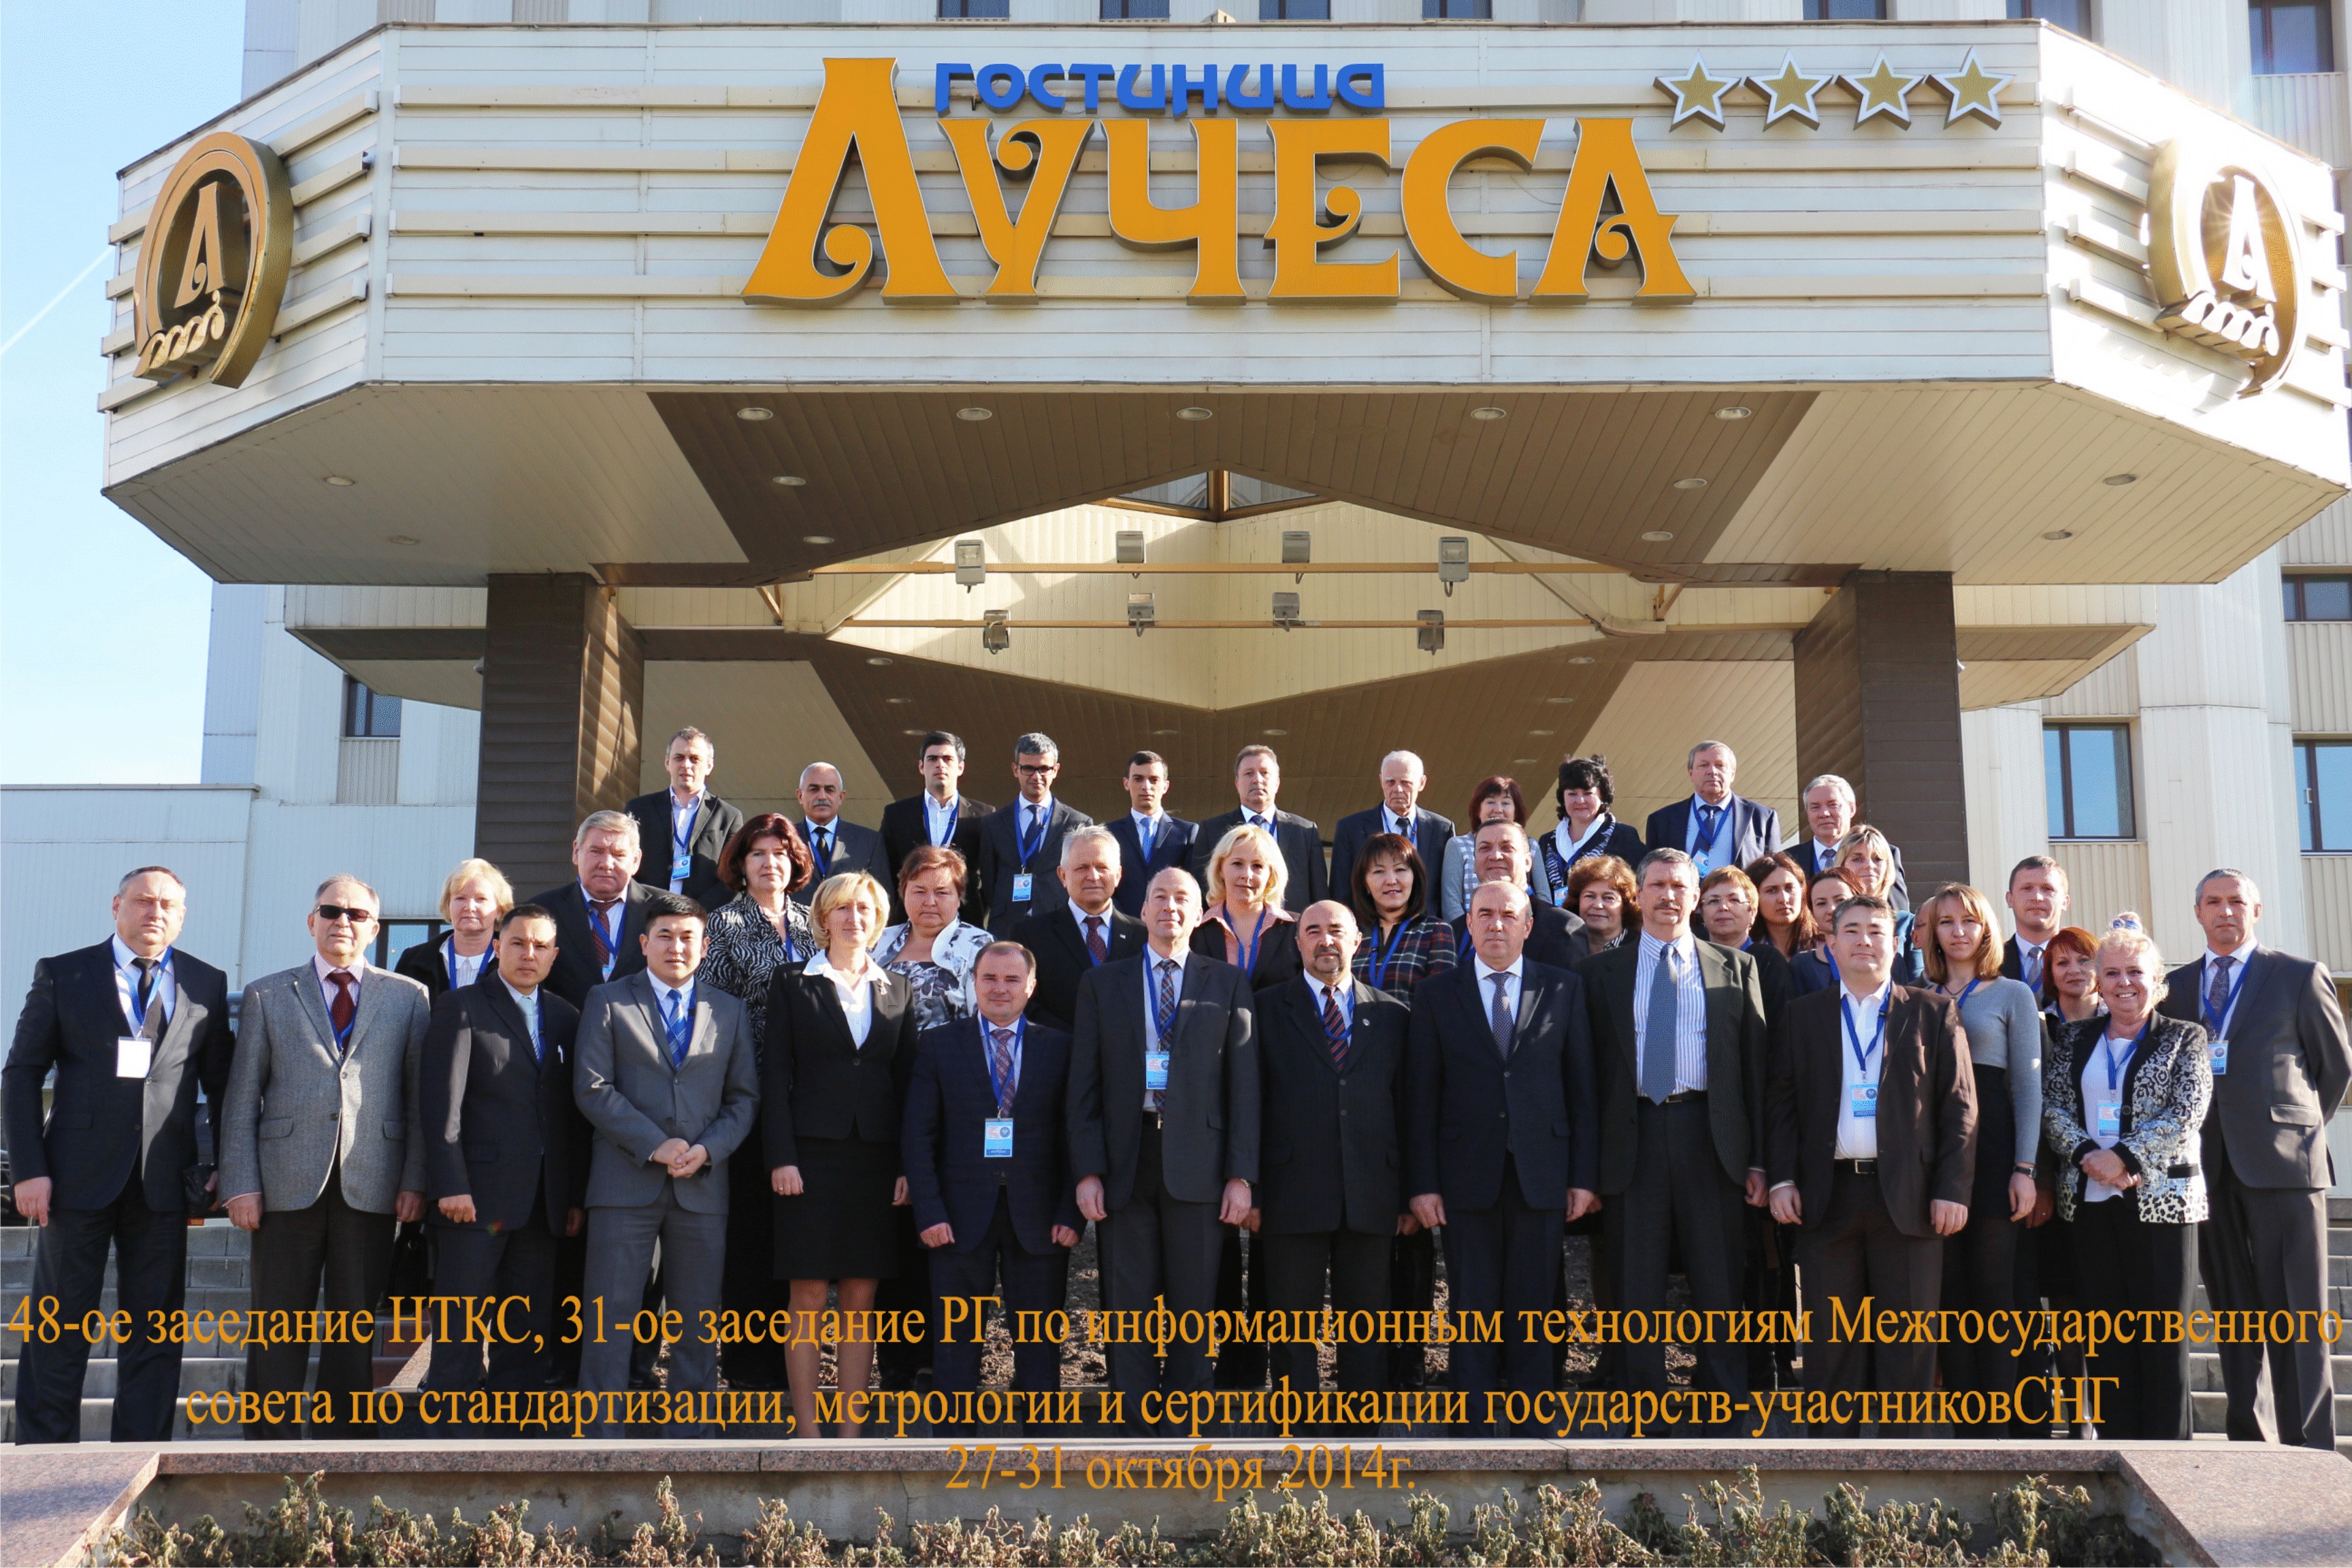 27-31 октября 2014 г. Витебск стал местом проведения двух международных мероприятий Межгосударственного совета по стандартизации, метрологии и сертификации СНГ.